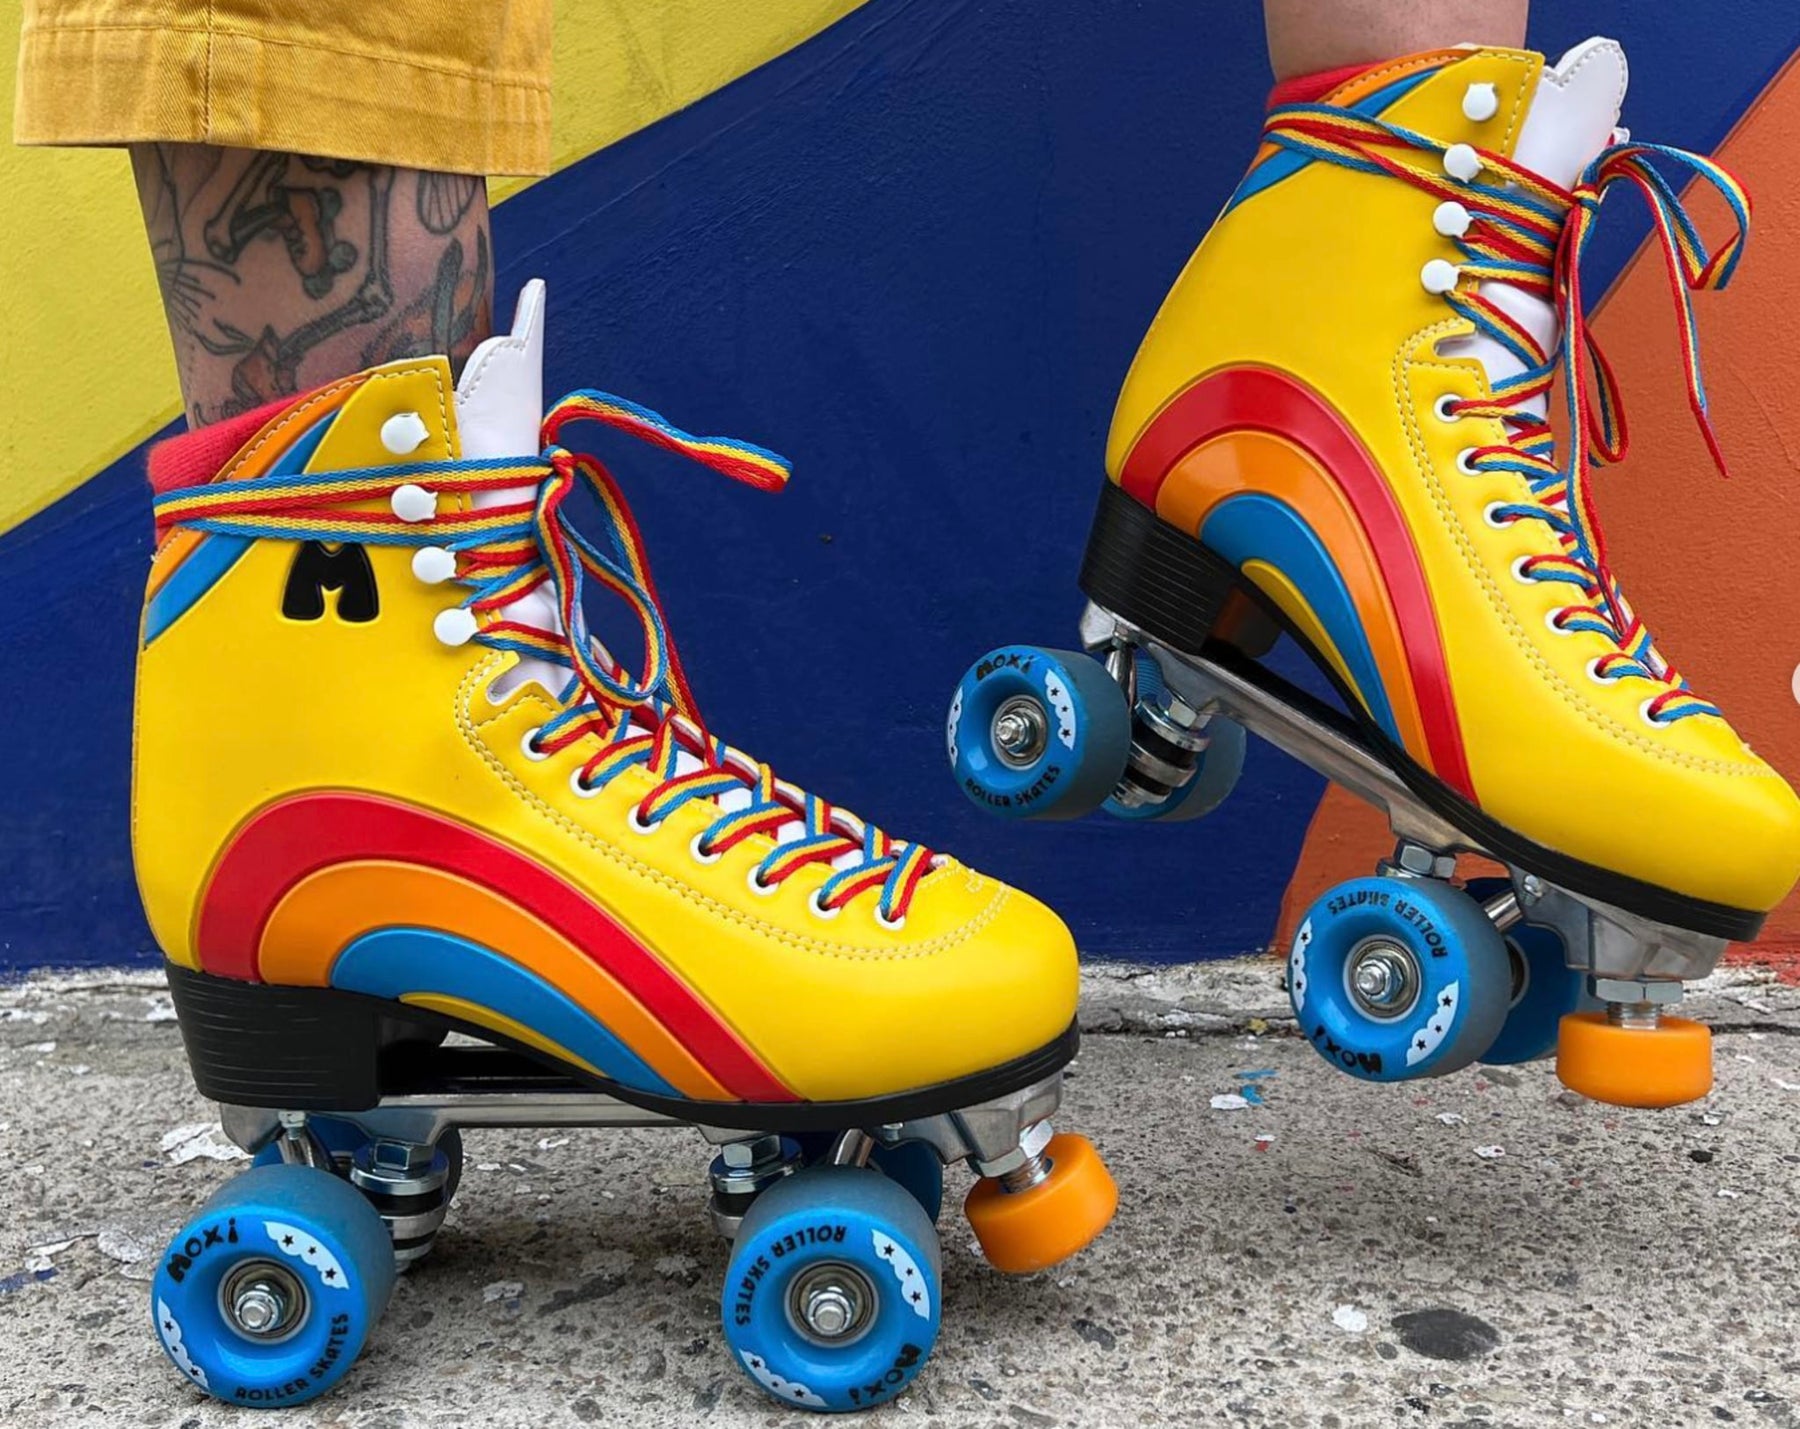 Moxi Skates - Rainbow Rider Yellow